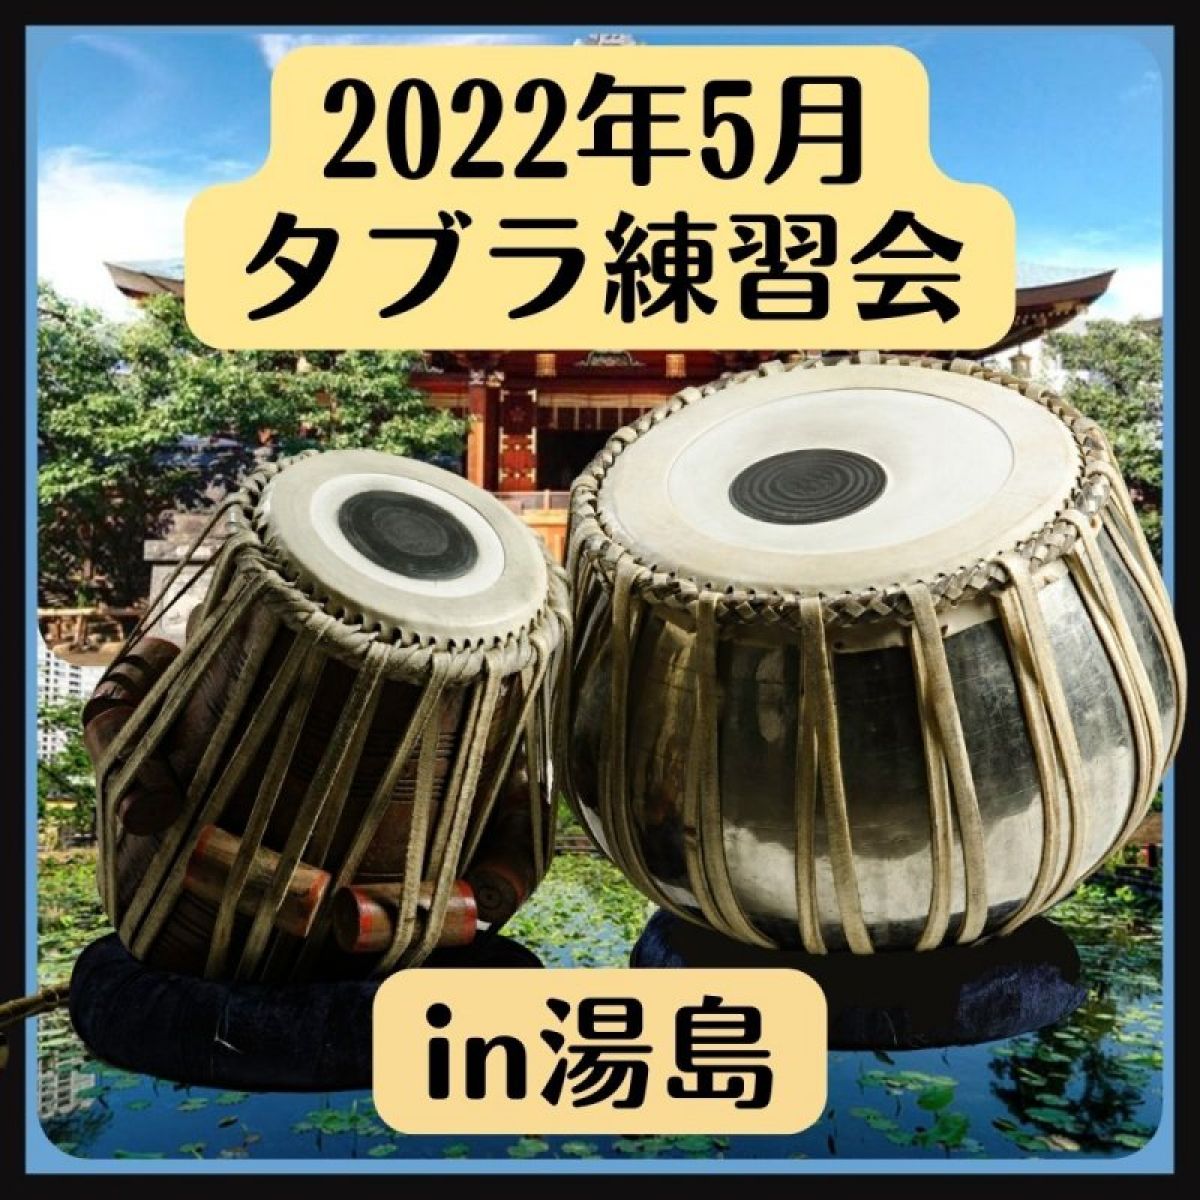 2022年5月29日(日) タブラ練習会 in 湯島